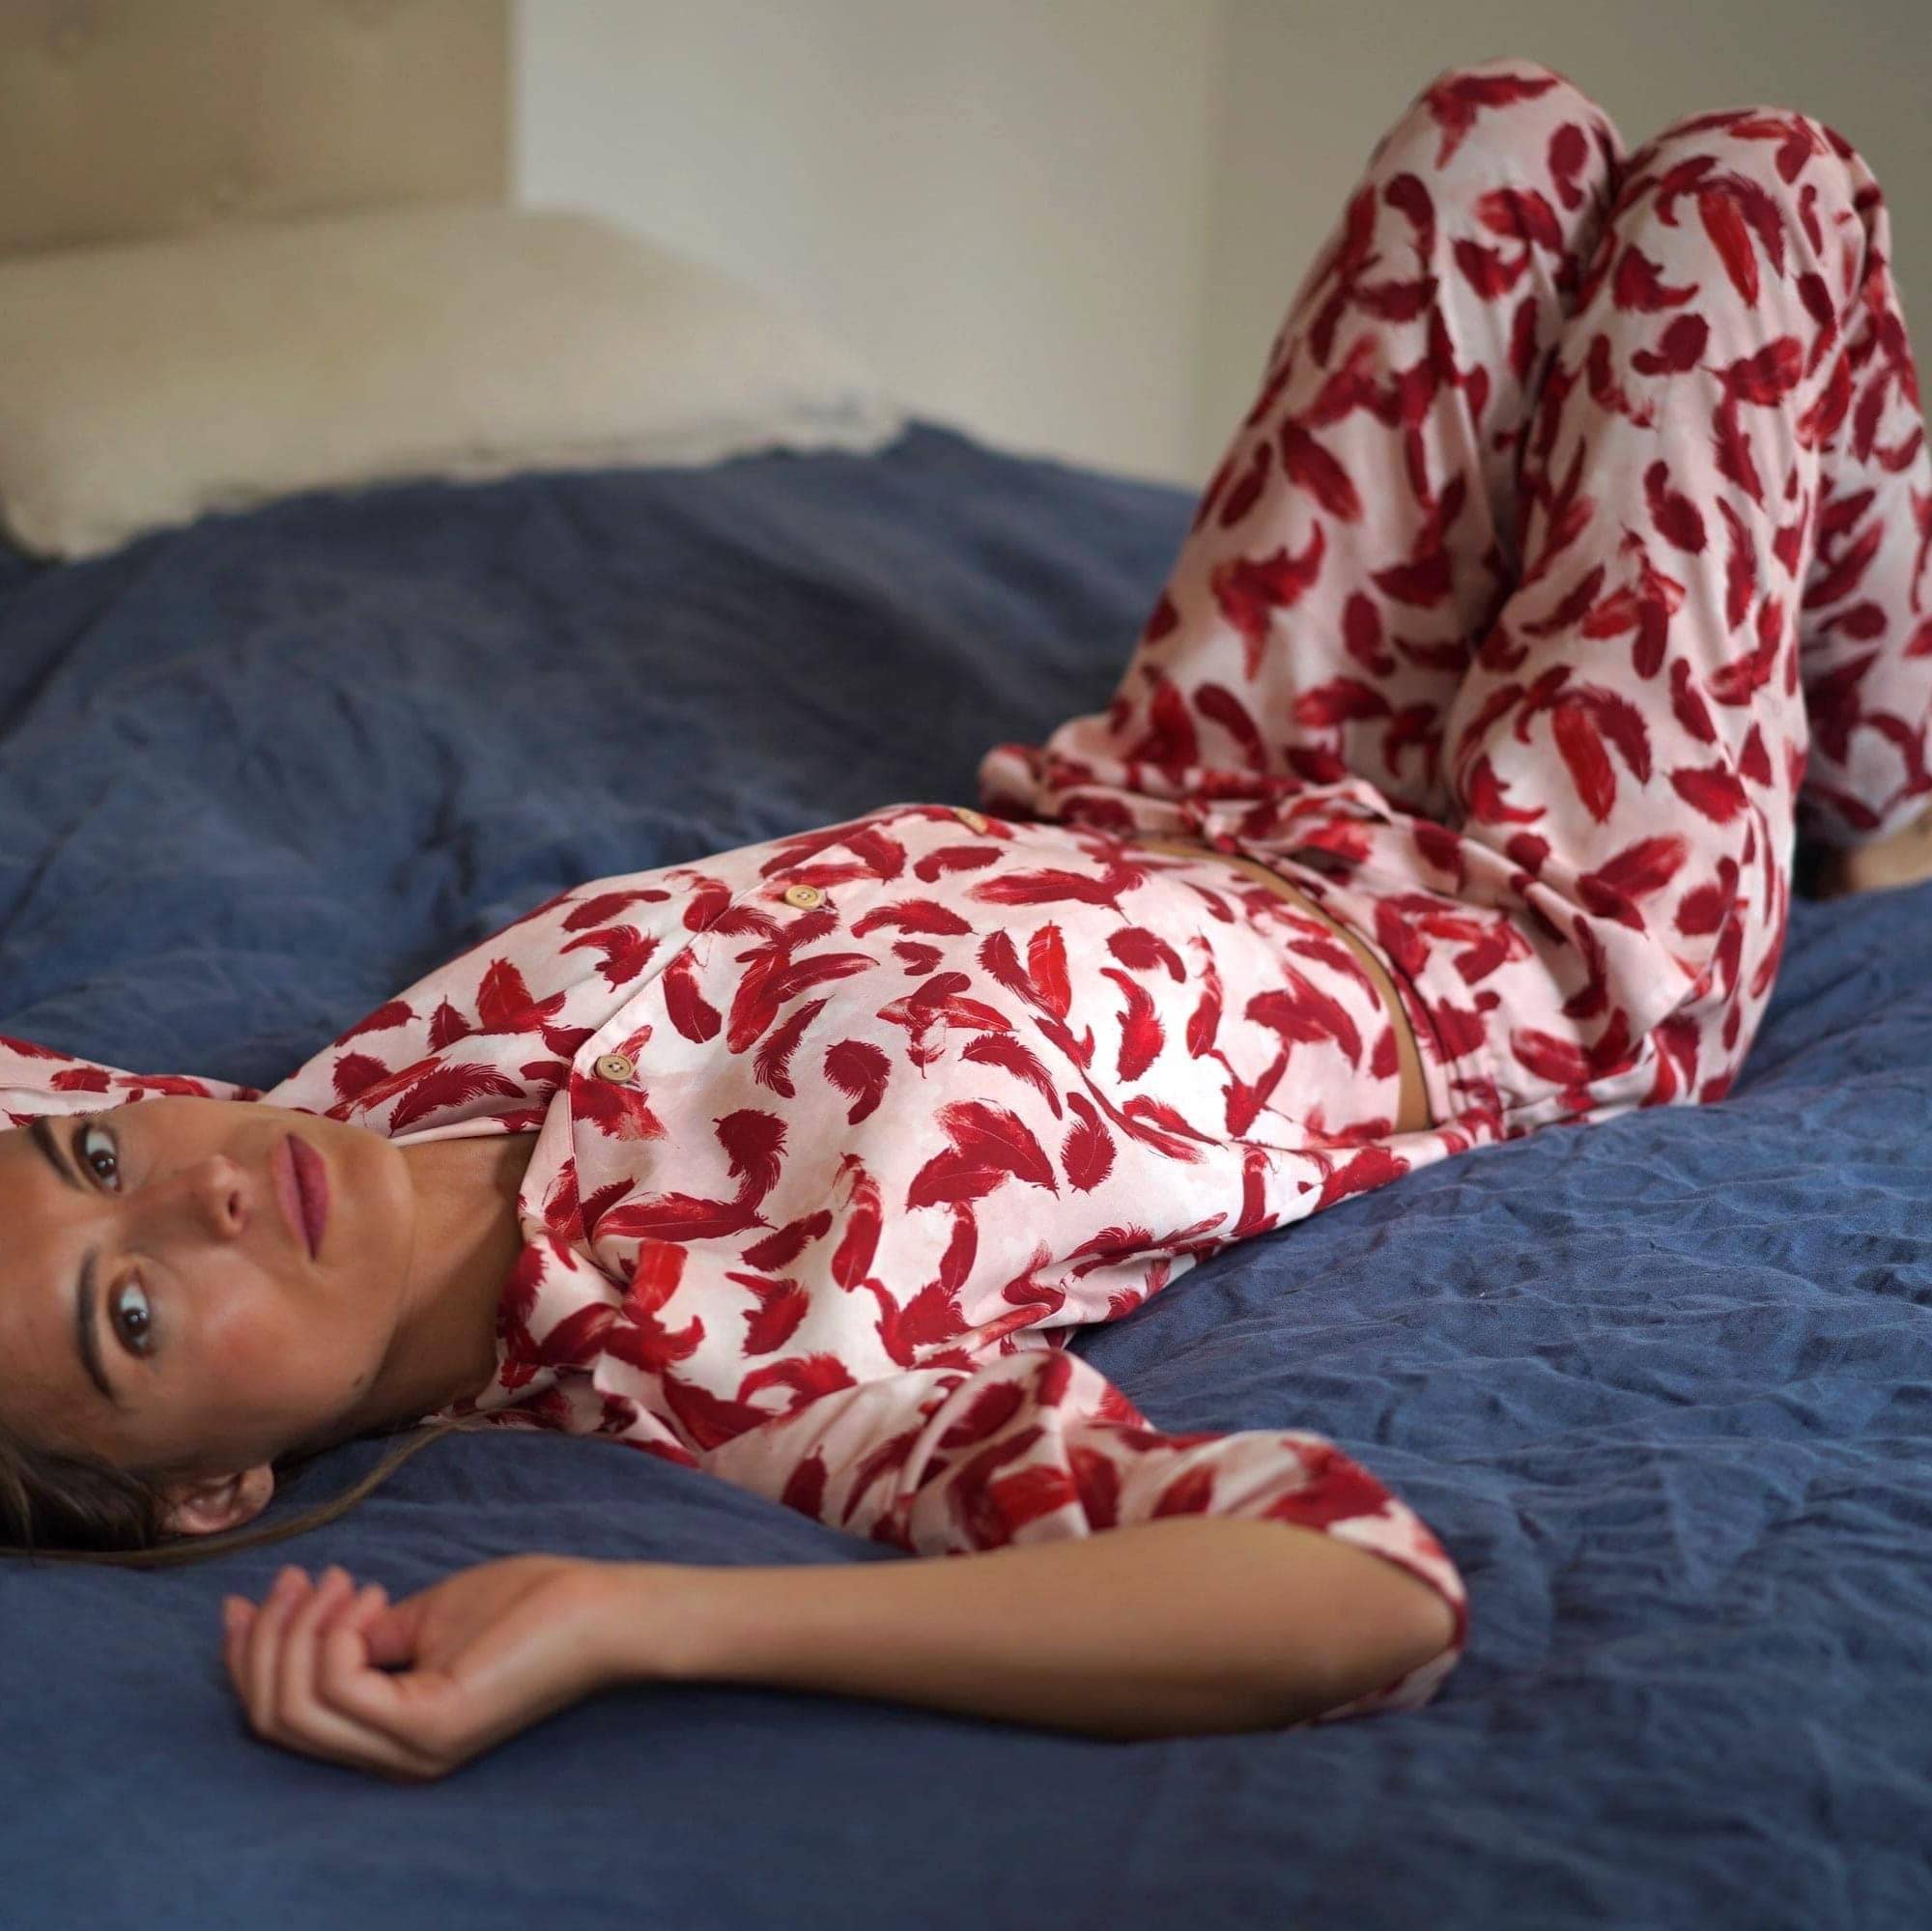 Nêge Paris - Pyjama Délicatesse chemise pantalon rouge bordeaux en 100% tencel lyocell certifié oeko-tex